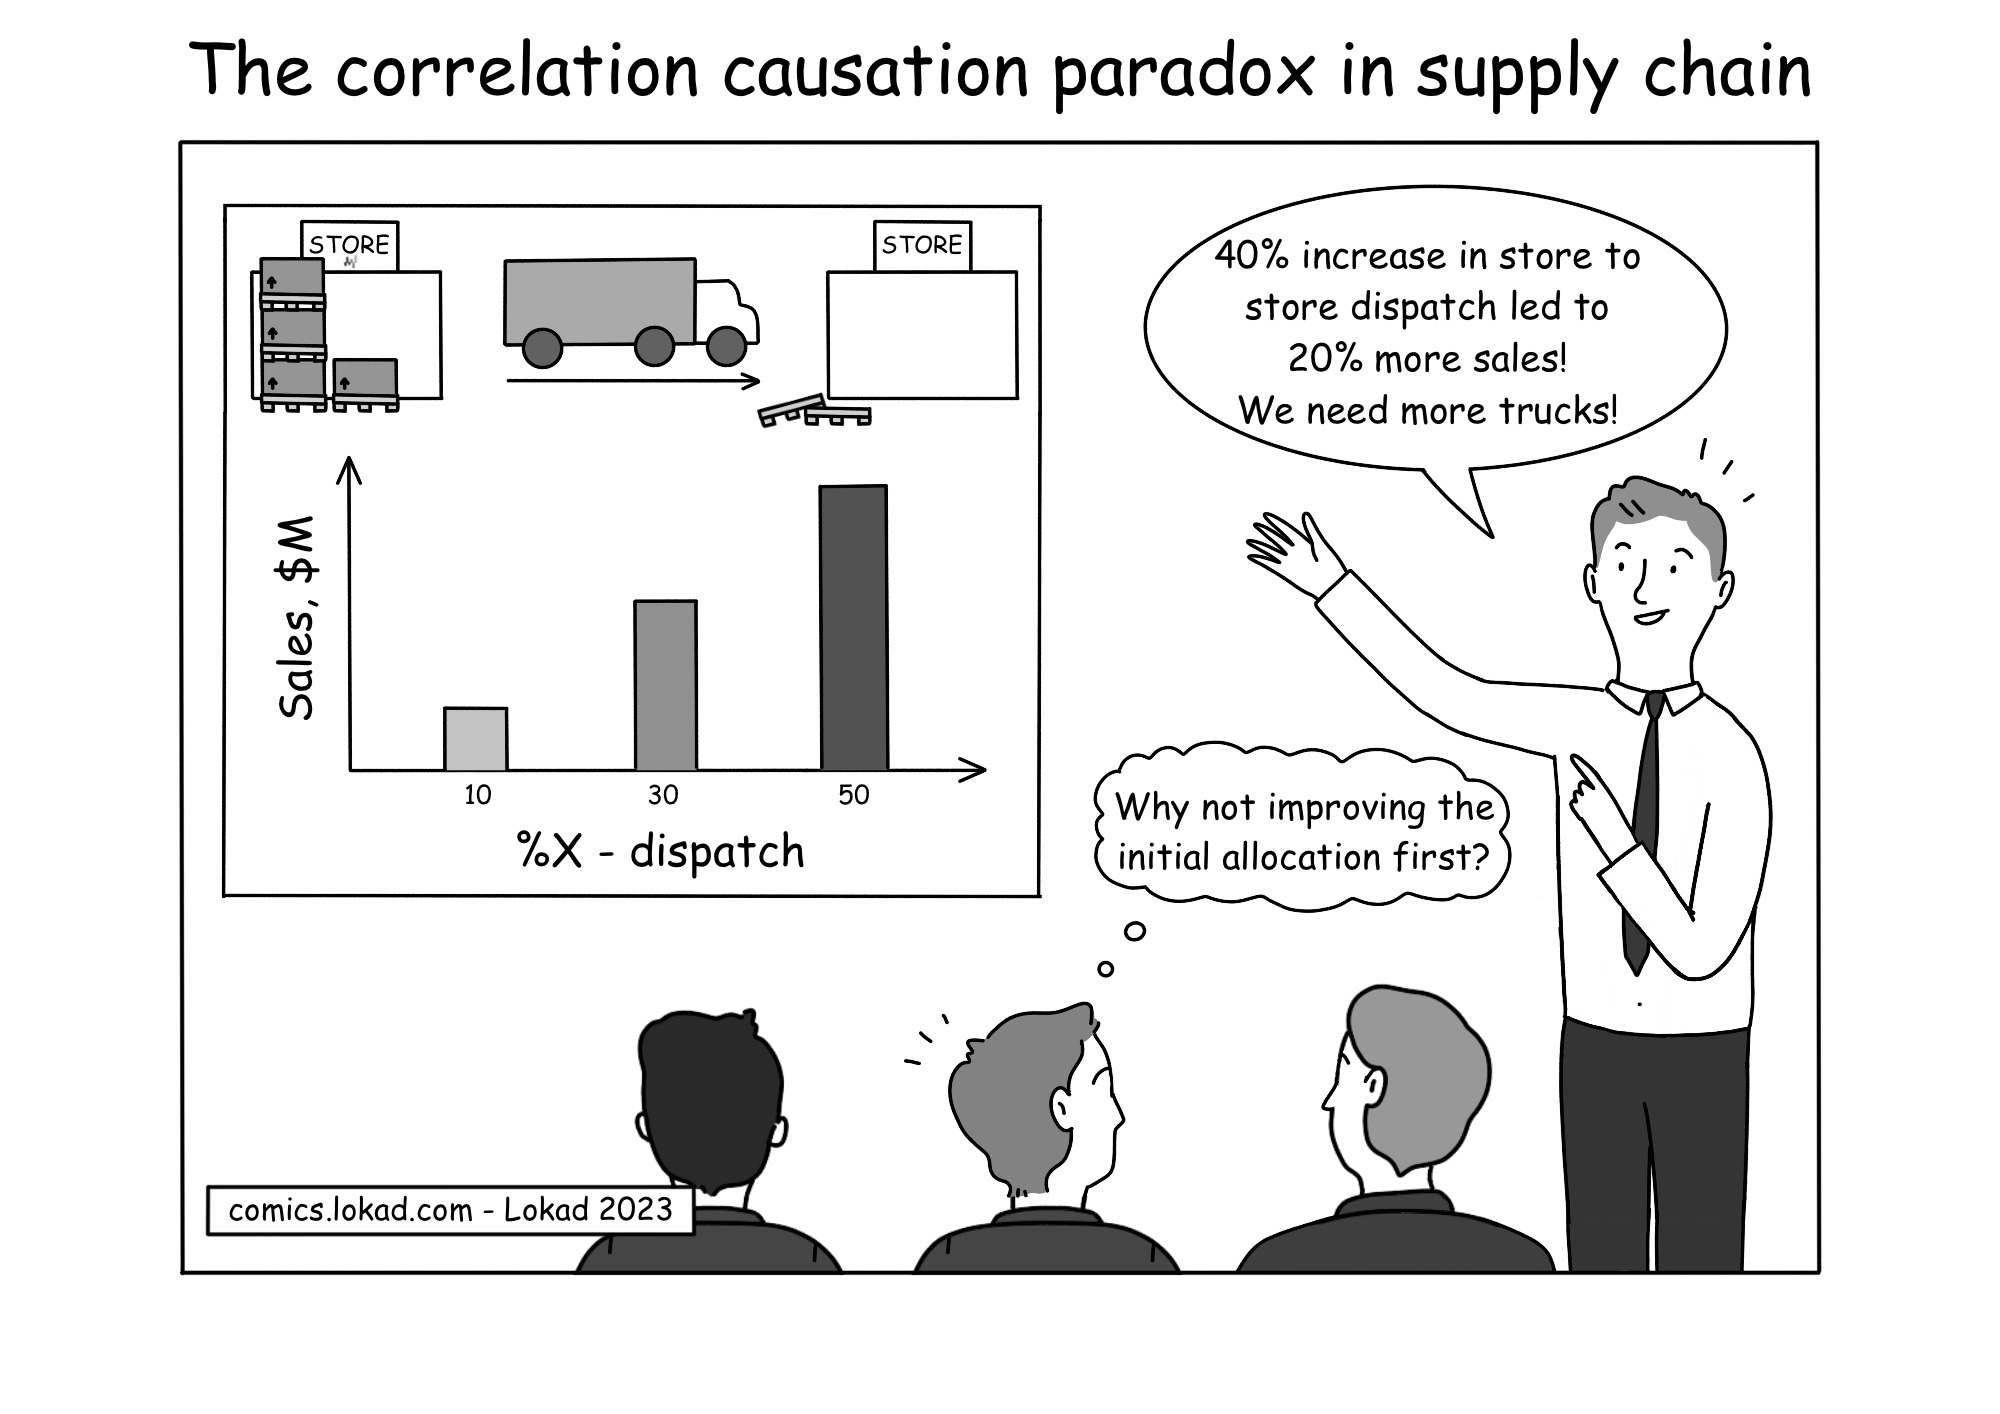 Comic aus der Supply-Chain-Serie von Lokad mit dem Titel 'Das Korrelation-Kausalitäts-Paradoxon in der Supply Chain'. Er zeigt einen Besprechungsraum, in dem ein Referent aufgeregt eine 40%ige Zunahme der Filial-zu-Filial-Lieferungen mit einem 20%igen Anstieg des Umsatzes korreliert und daraus schließt, dass mehr LKWs für die Lieferungen zwischen den Filialen benötigt werden. Eine Gedankenblase eines der Zuhörer schlägt vor, zuerst die anfängliche Zuweisung zu verbessern, was die Verwirrung zwischen Korrelation und Kausalität in der Entscheidungsfindung verdeutlicht.